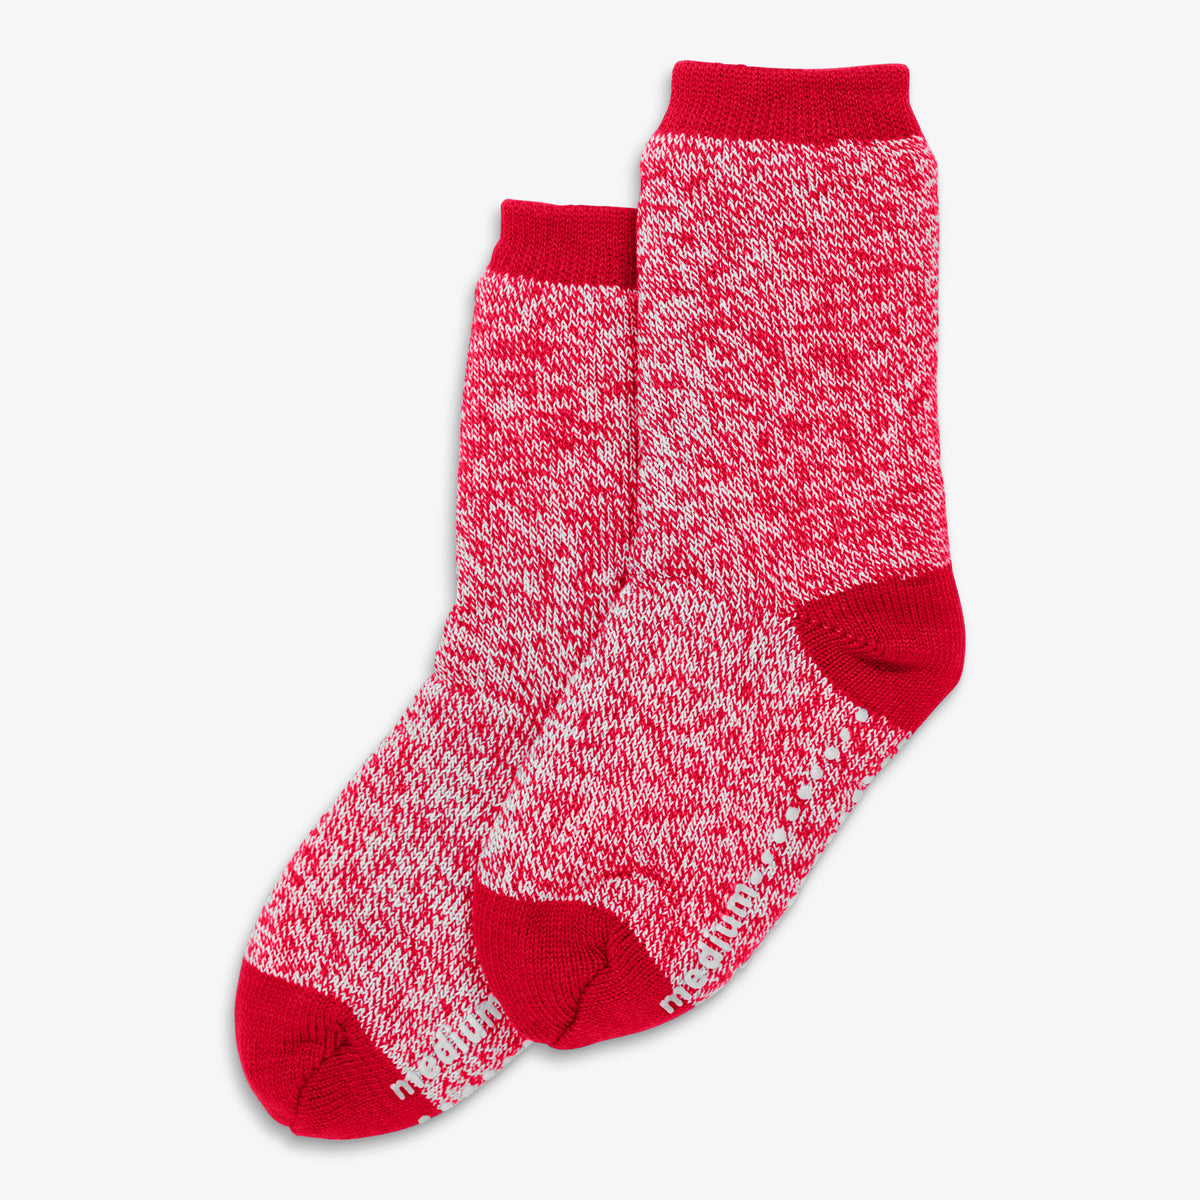 Fleece-lined slipper socks | Primary.com